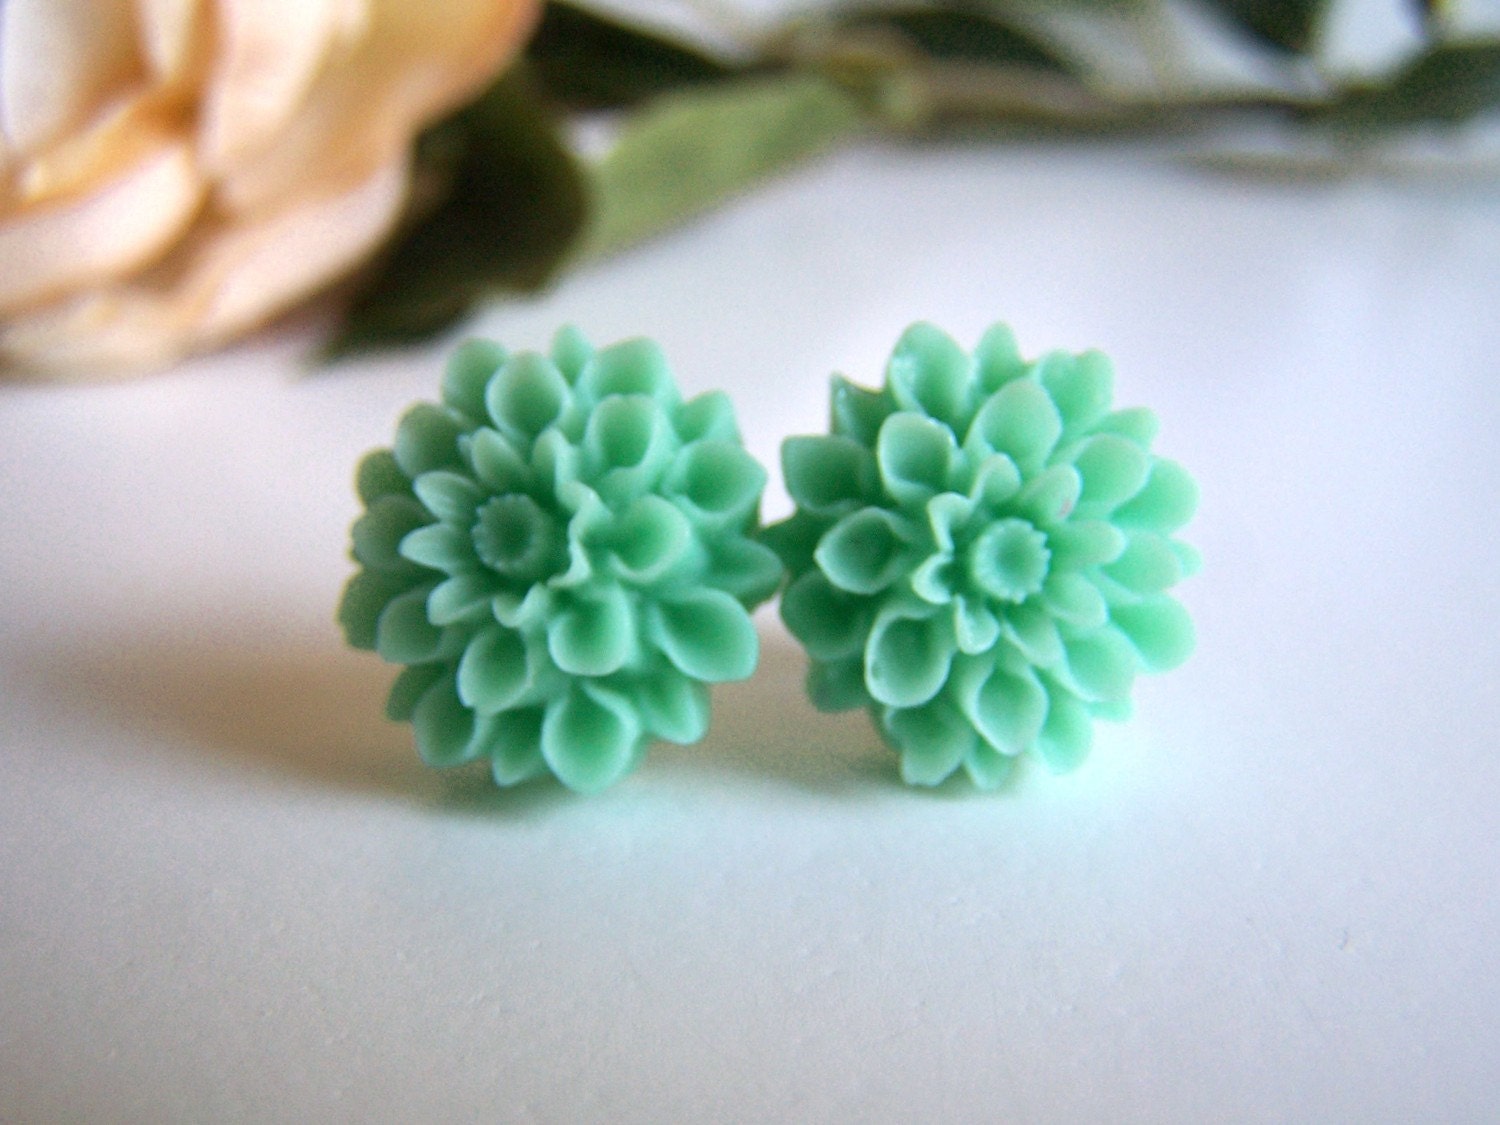 the mint chrysanthemum stud earrings.